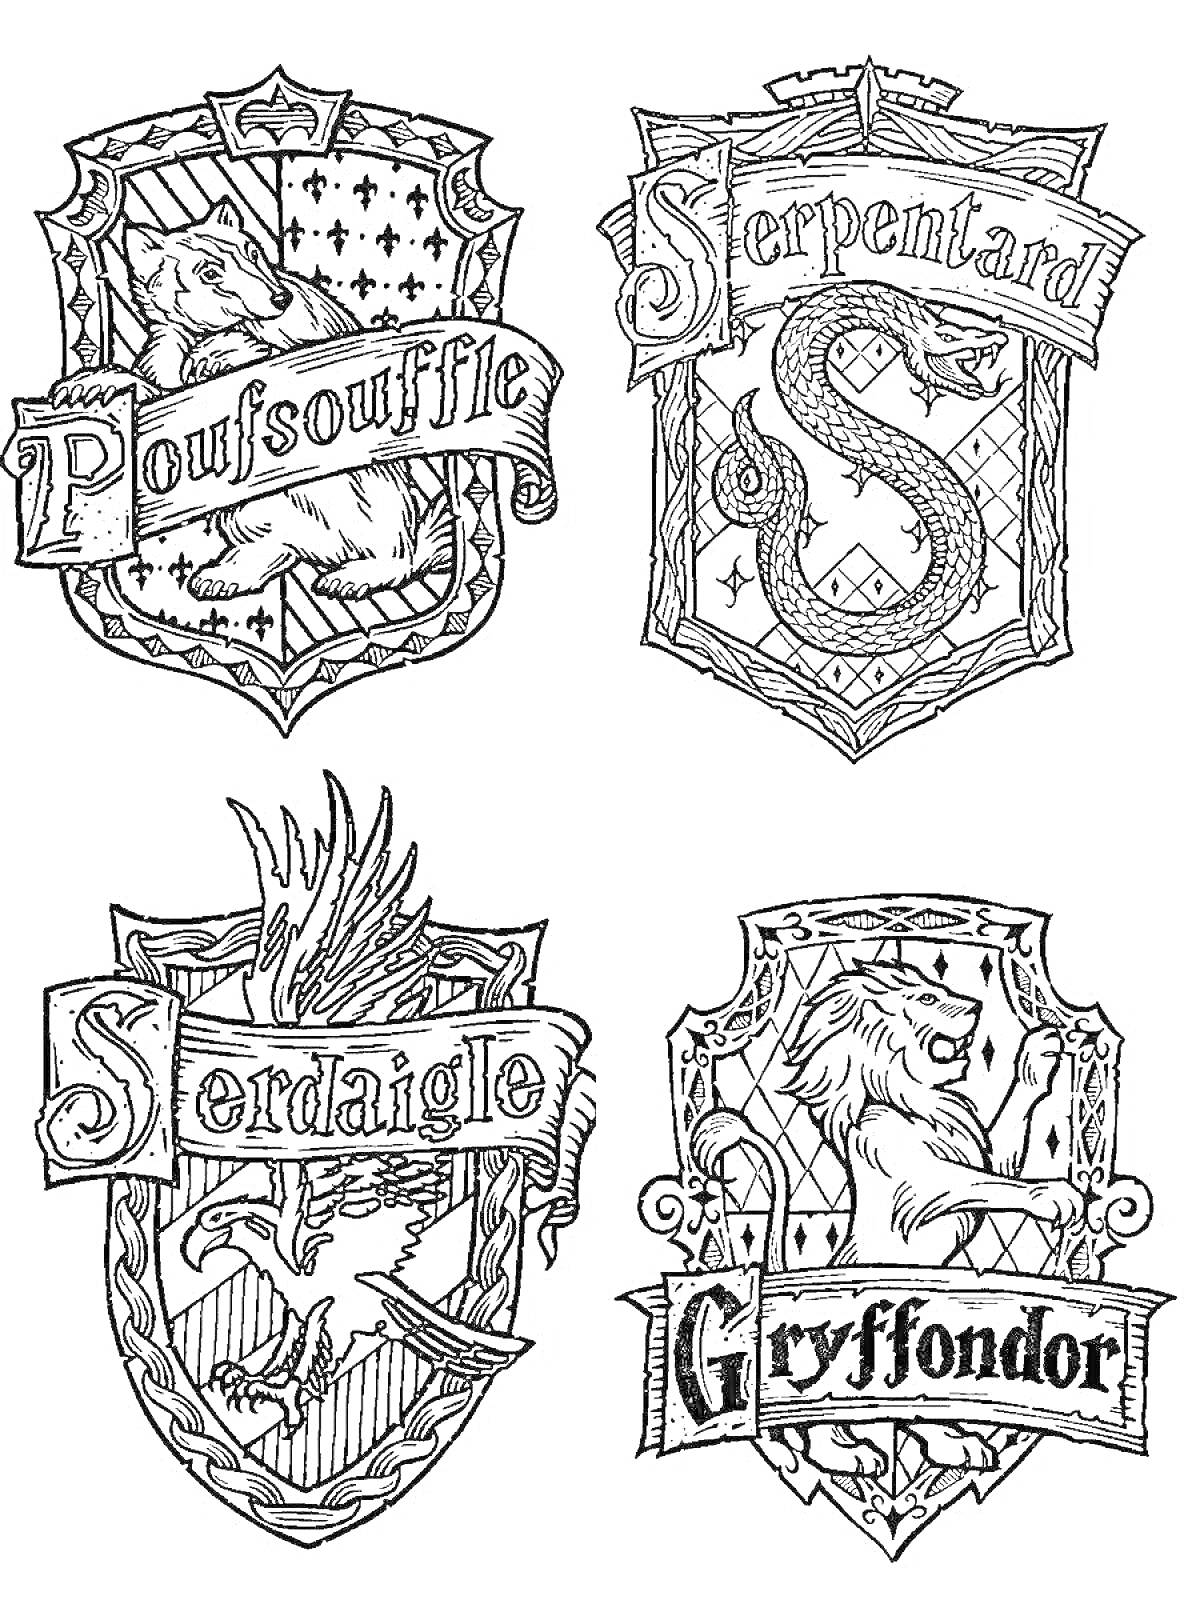 Гербы факультетов Хогвартса - Пуффендуй, Слизерин, Когтевран, Гриффиндор, на гербах изображены барсук, змея, орёл и лев.